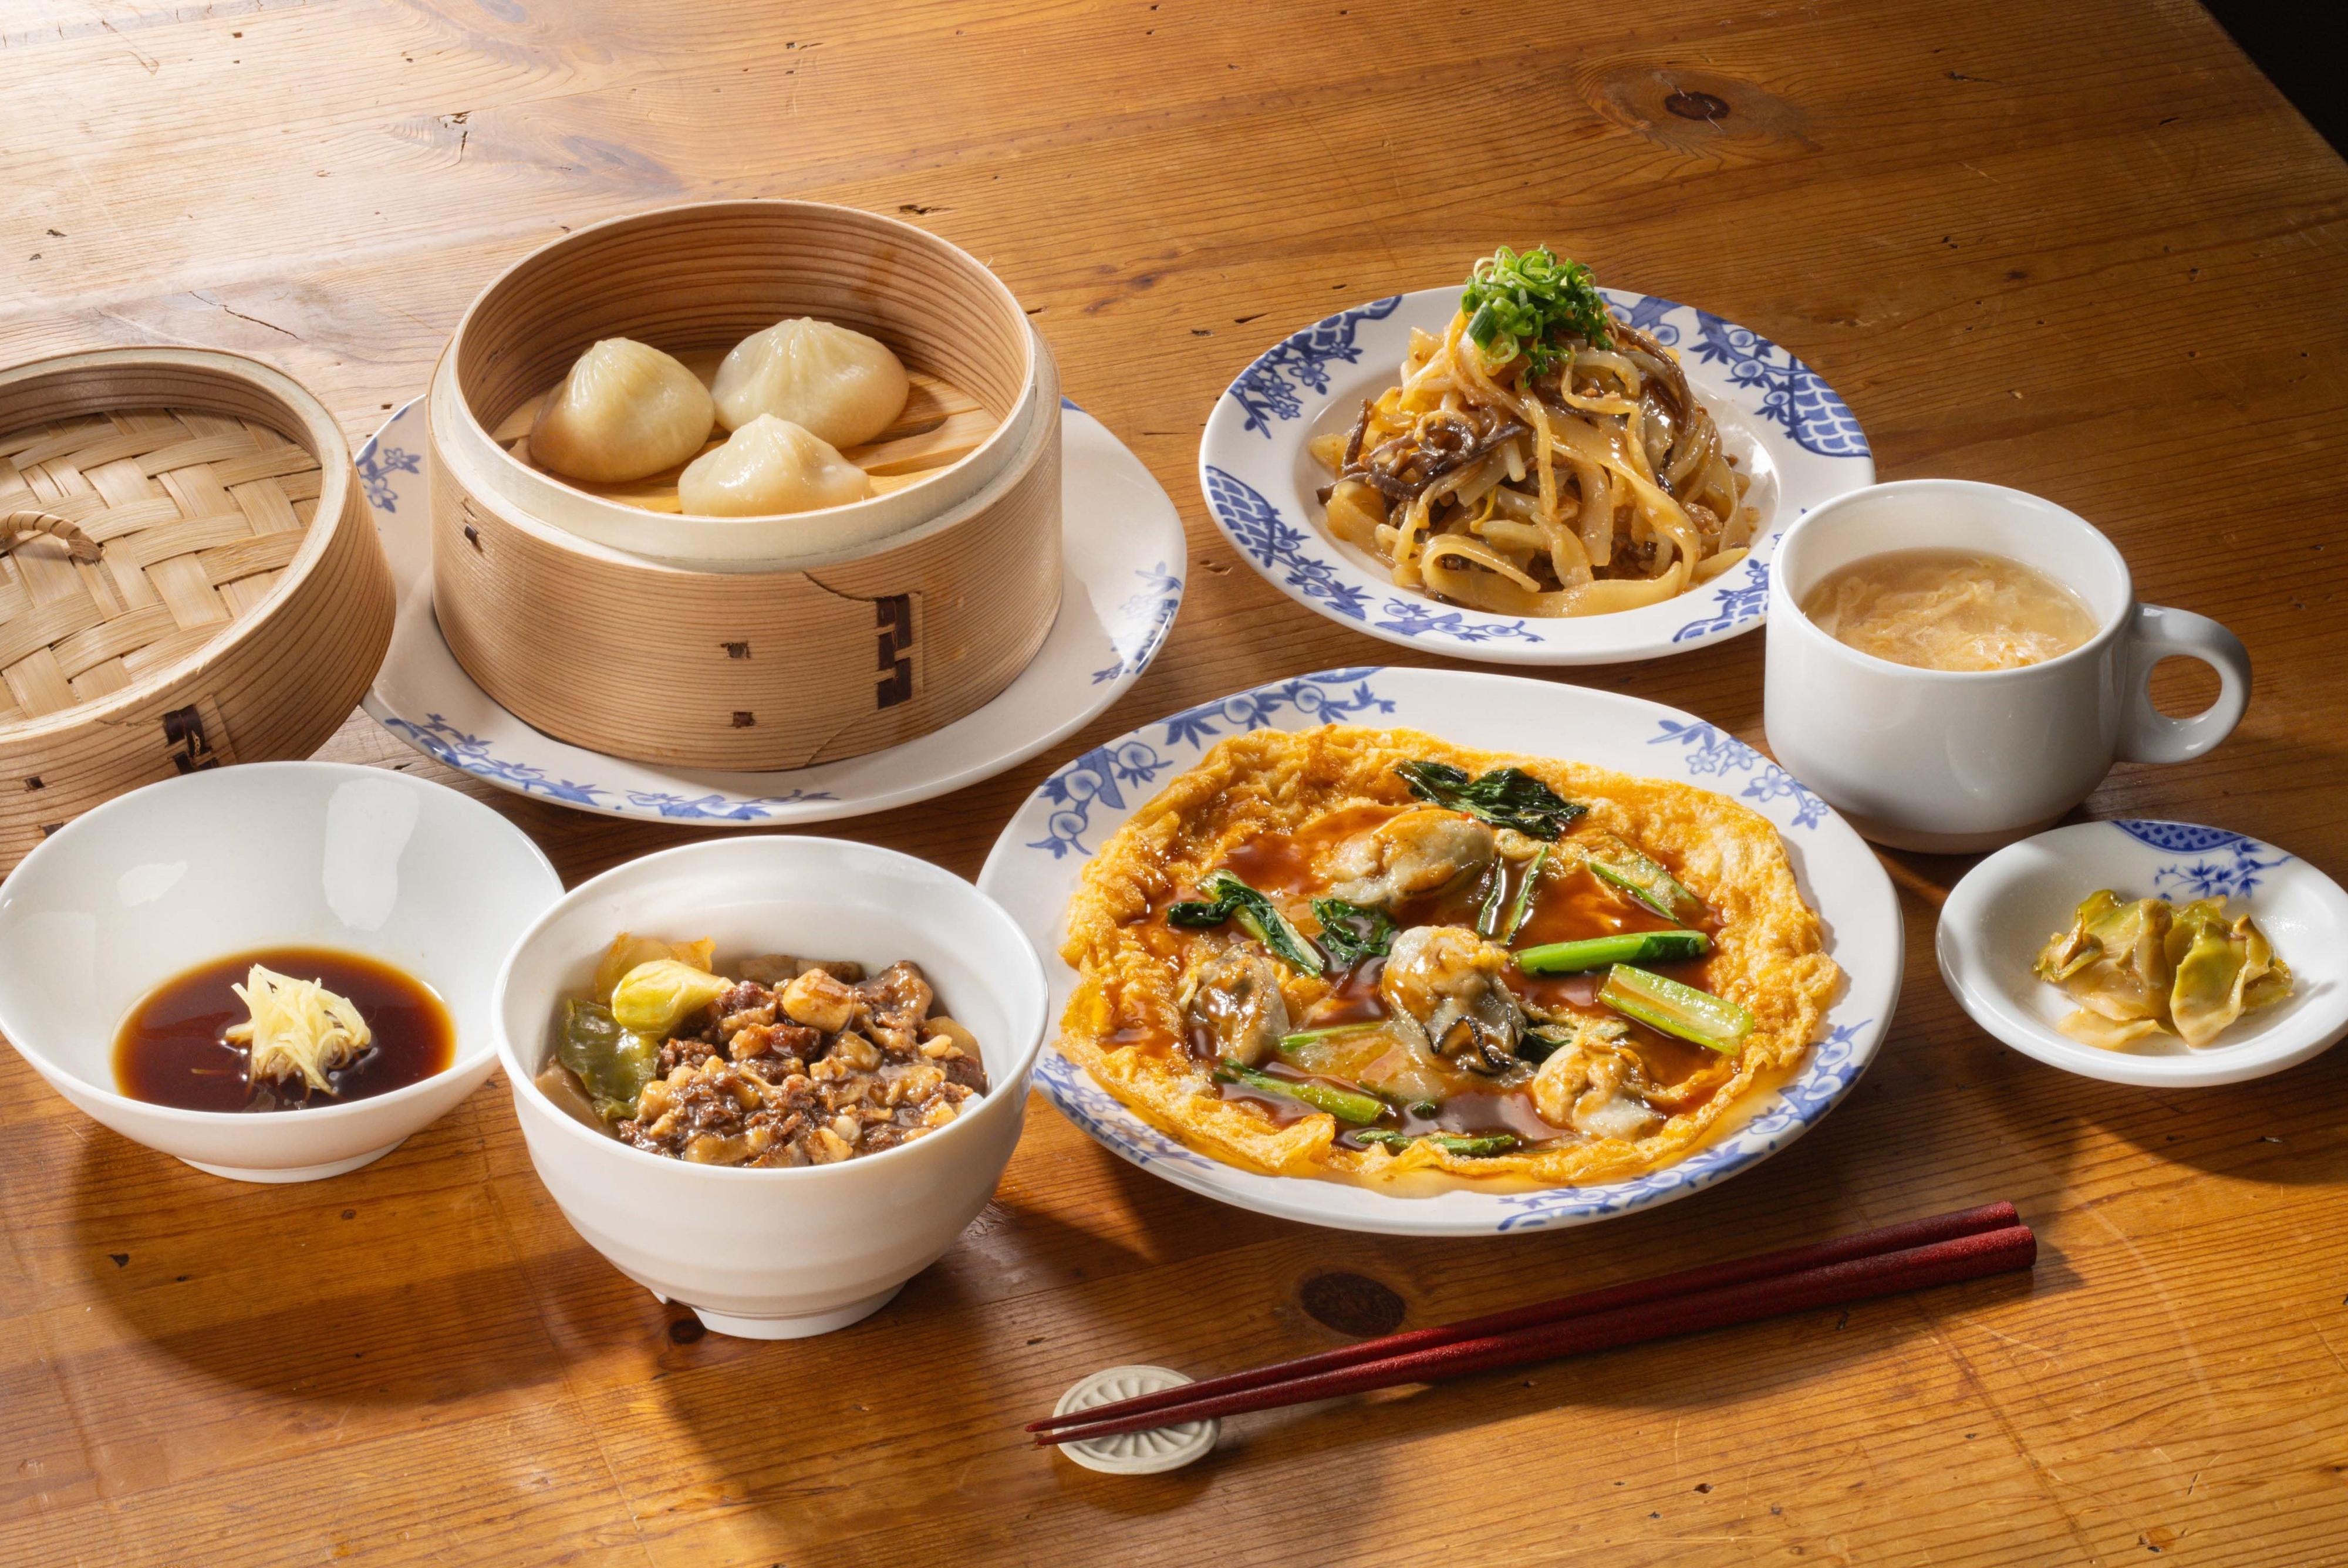 中華料理の食事セットがテーブルに並んでいる。